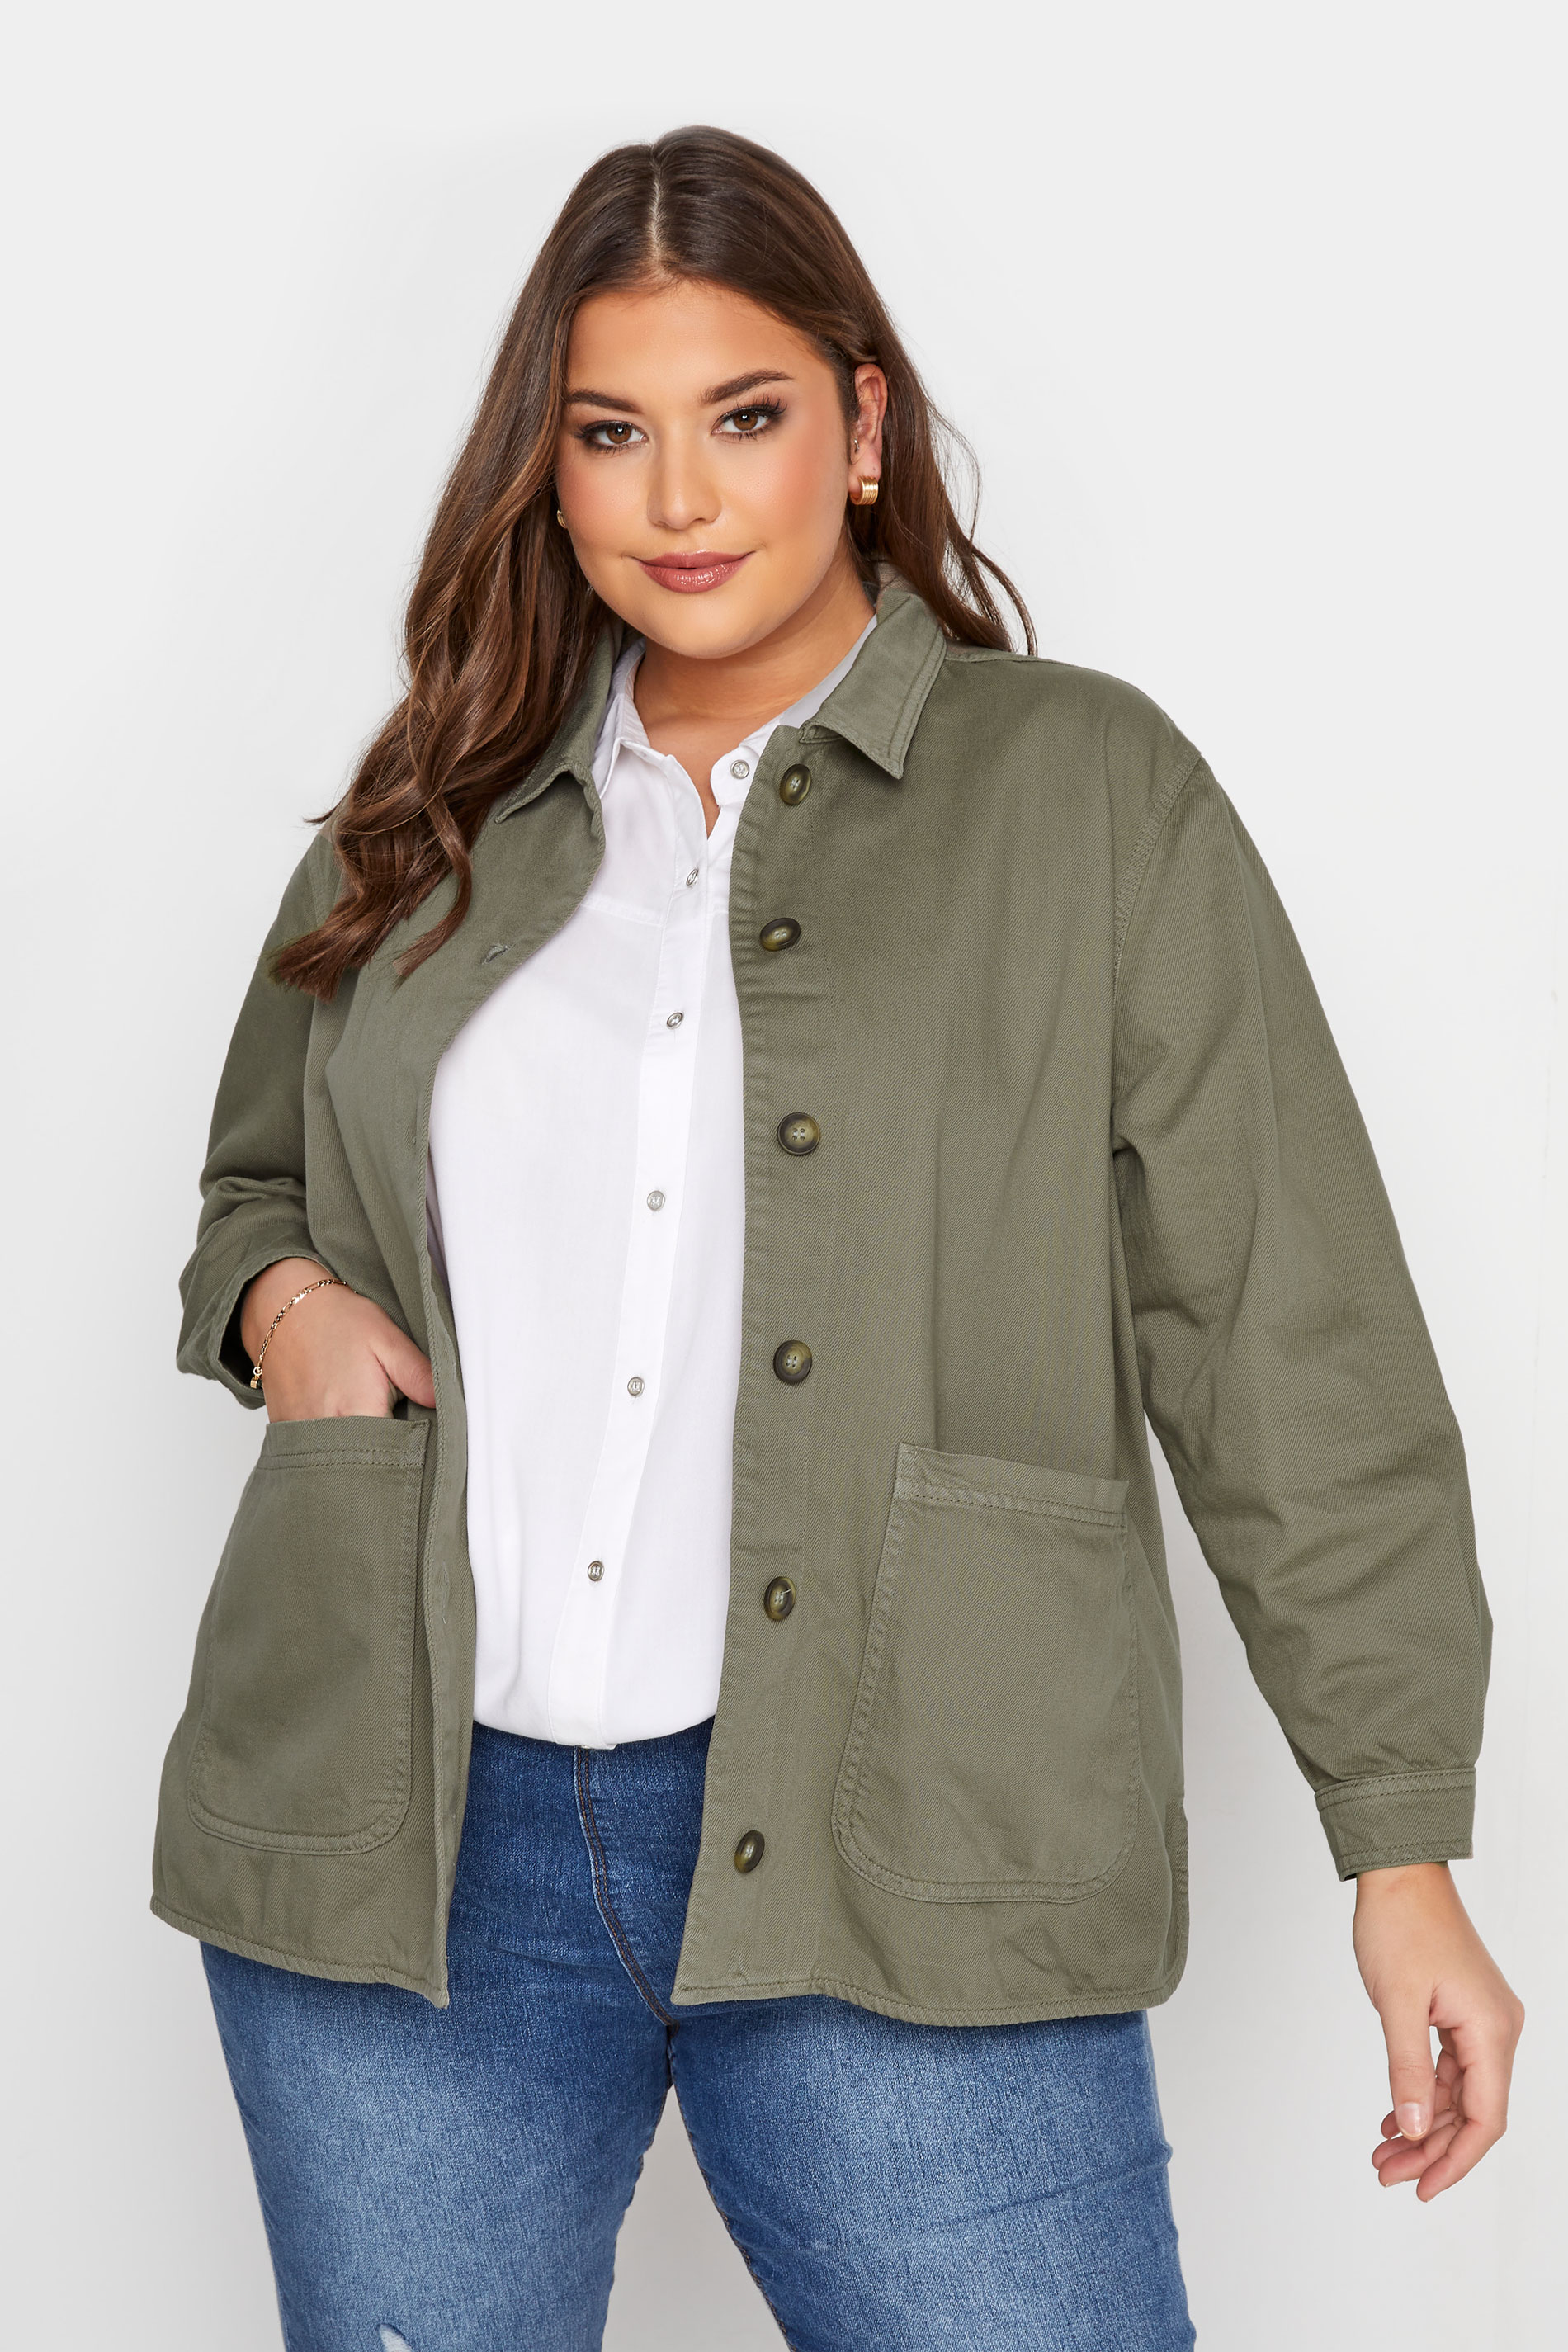 Plus Size Khaki Green Button Through Jacket | Yours Clothing